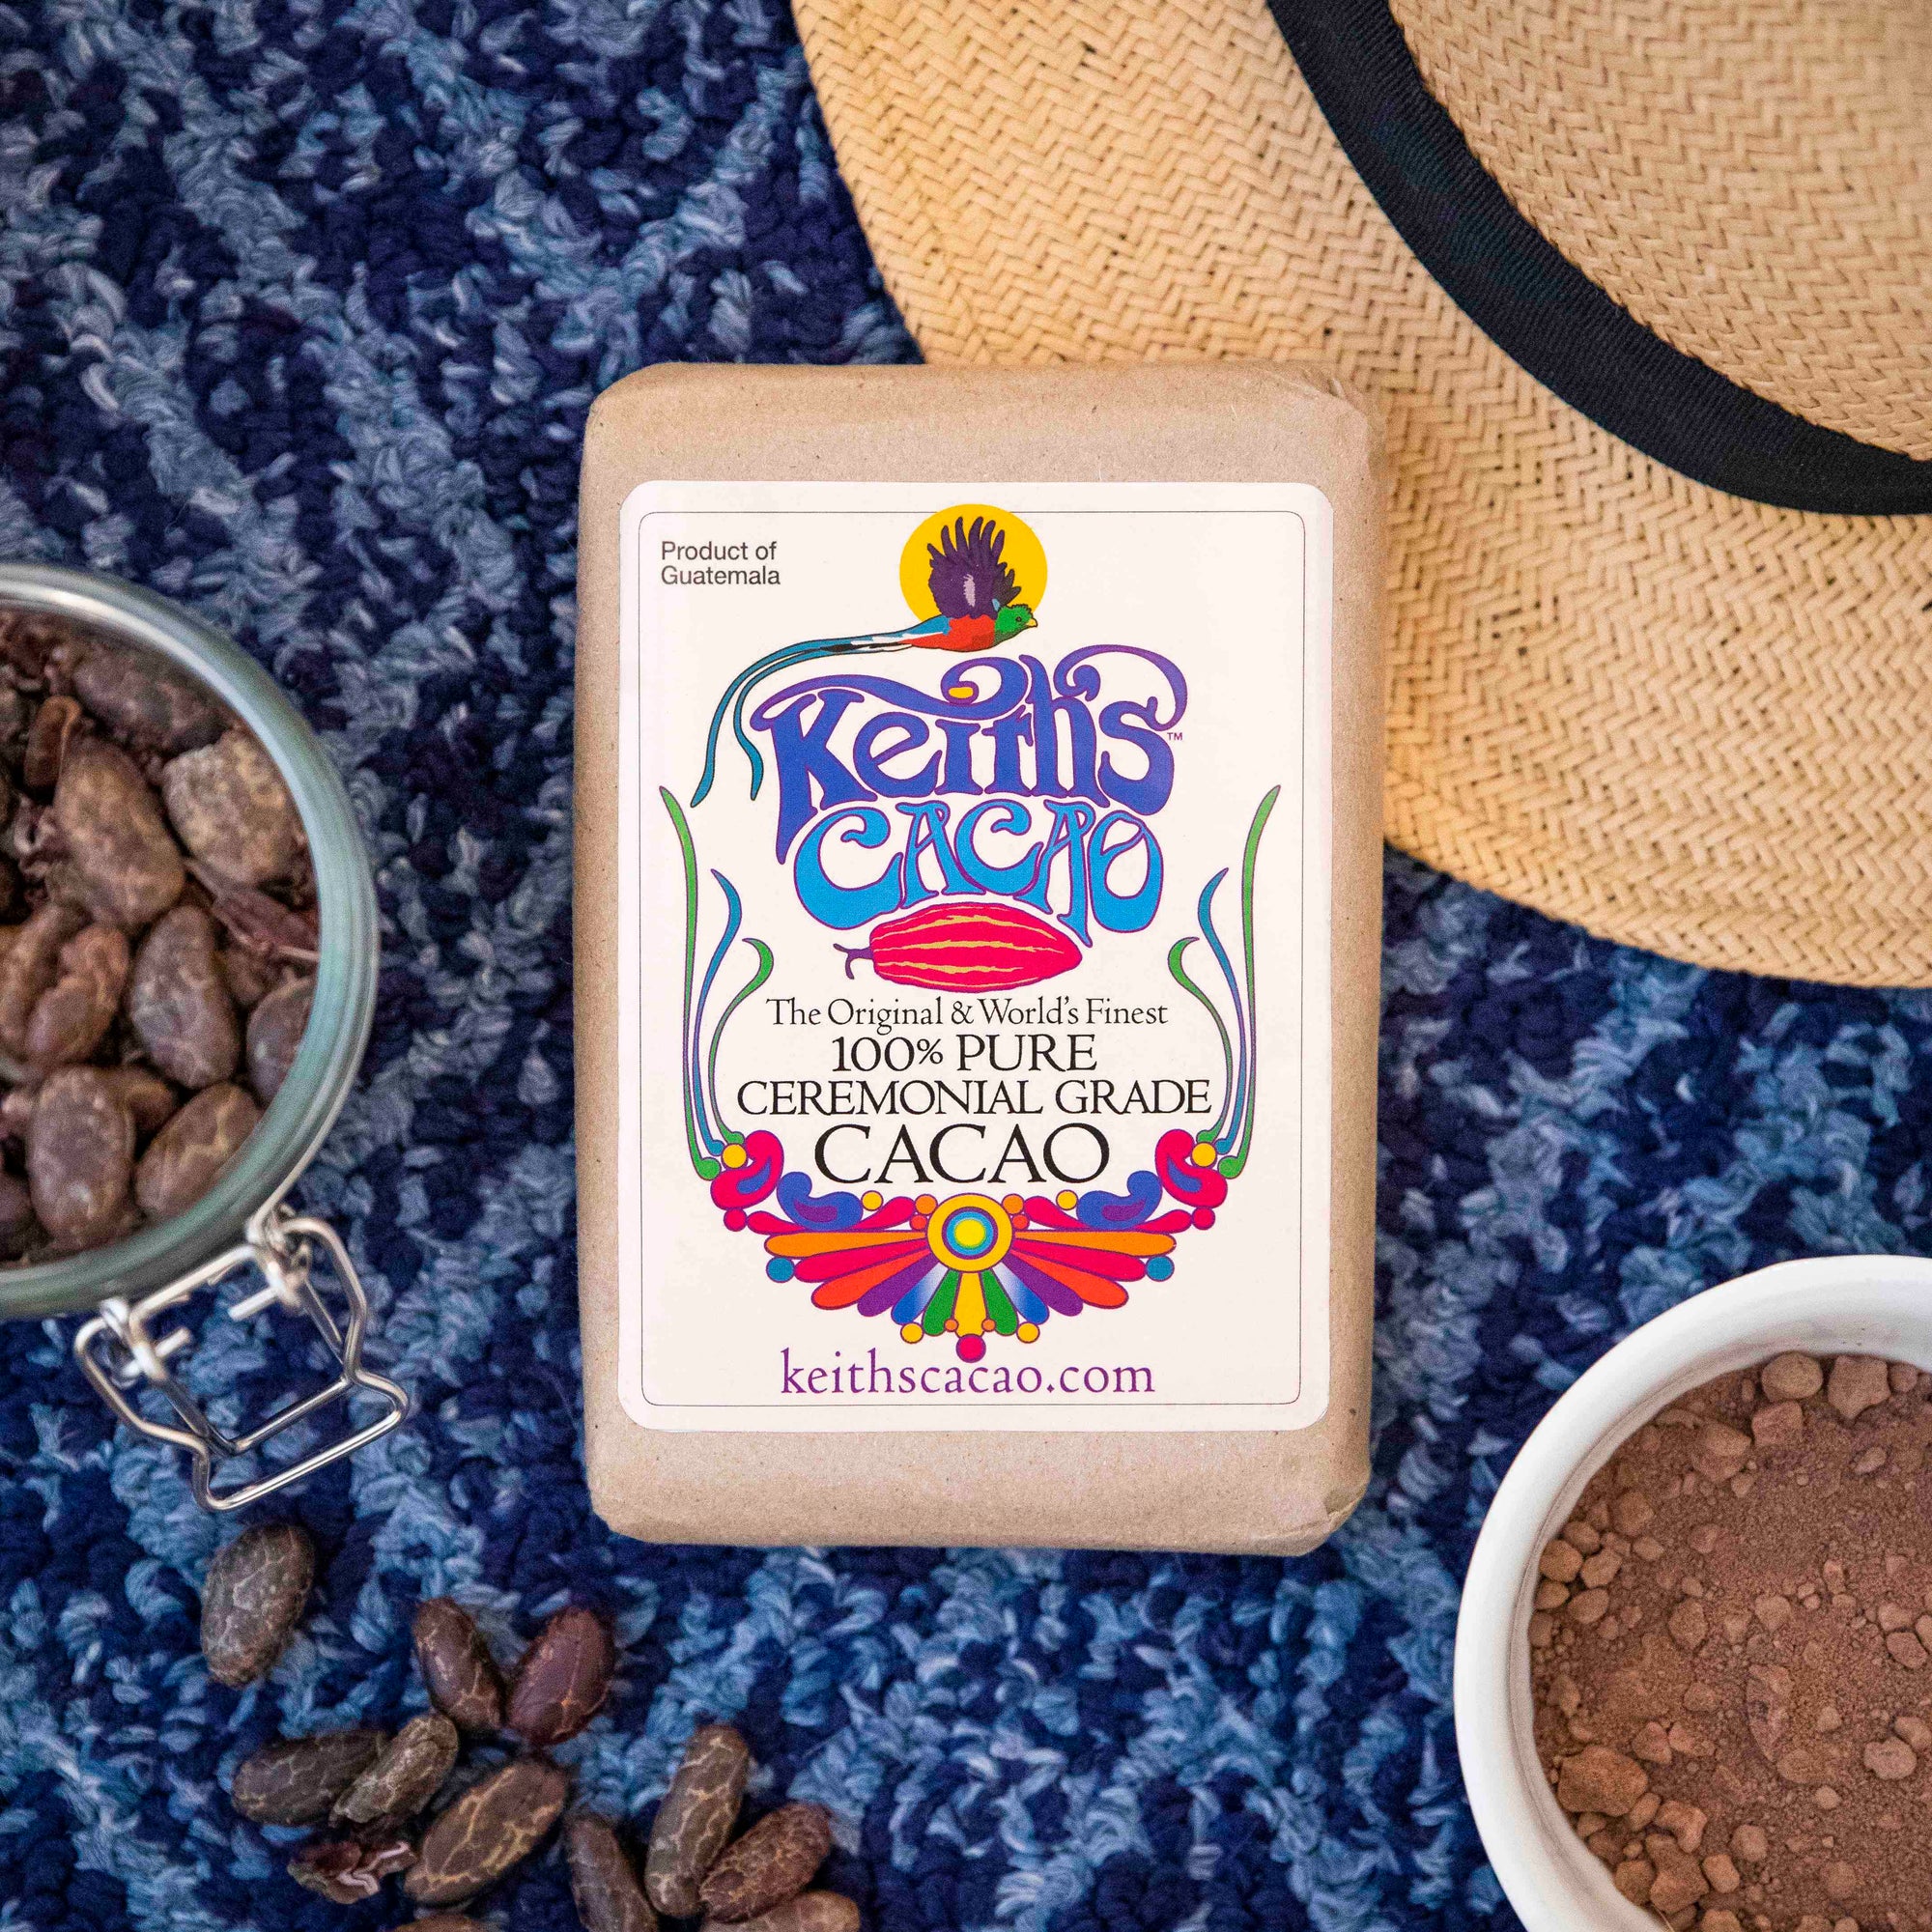 Cacao Paste: The Original & World’s Finest 100% Pure Ceremonial Grade Cacao